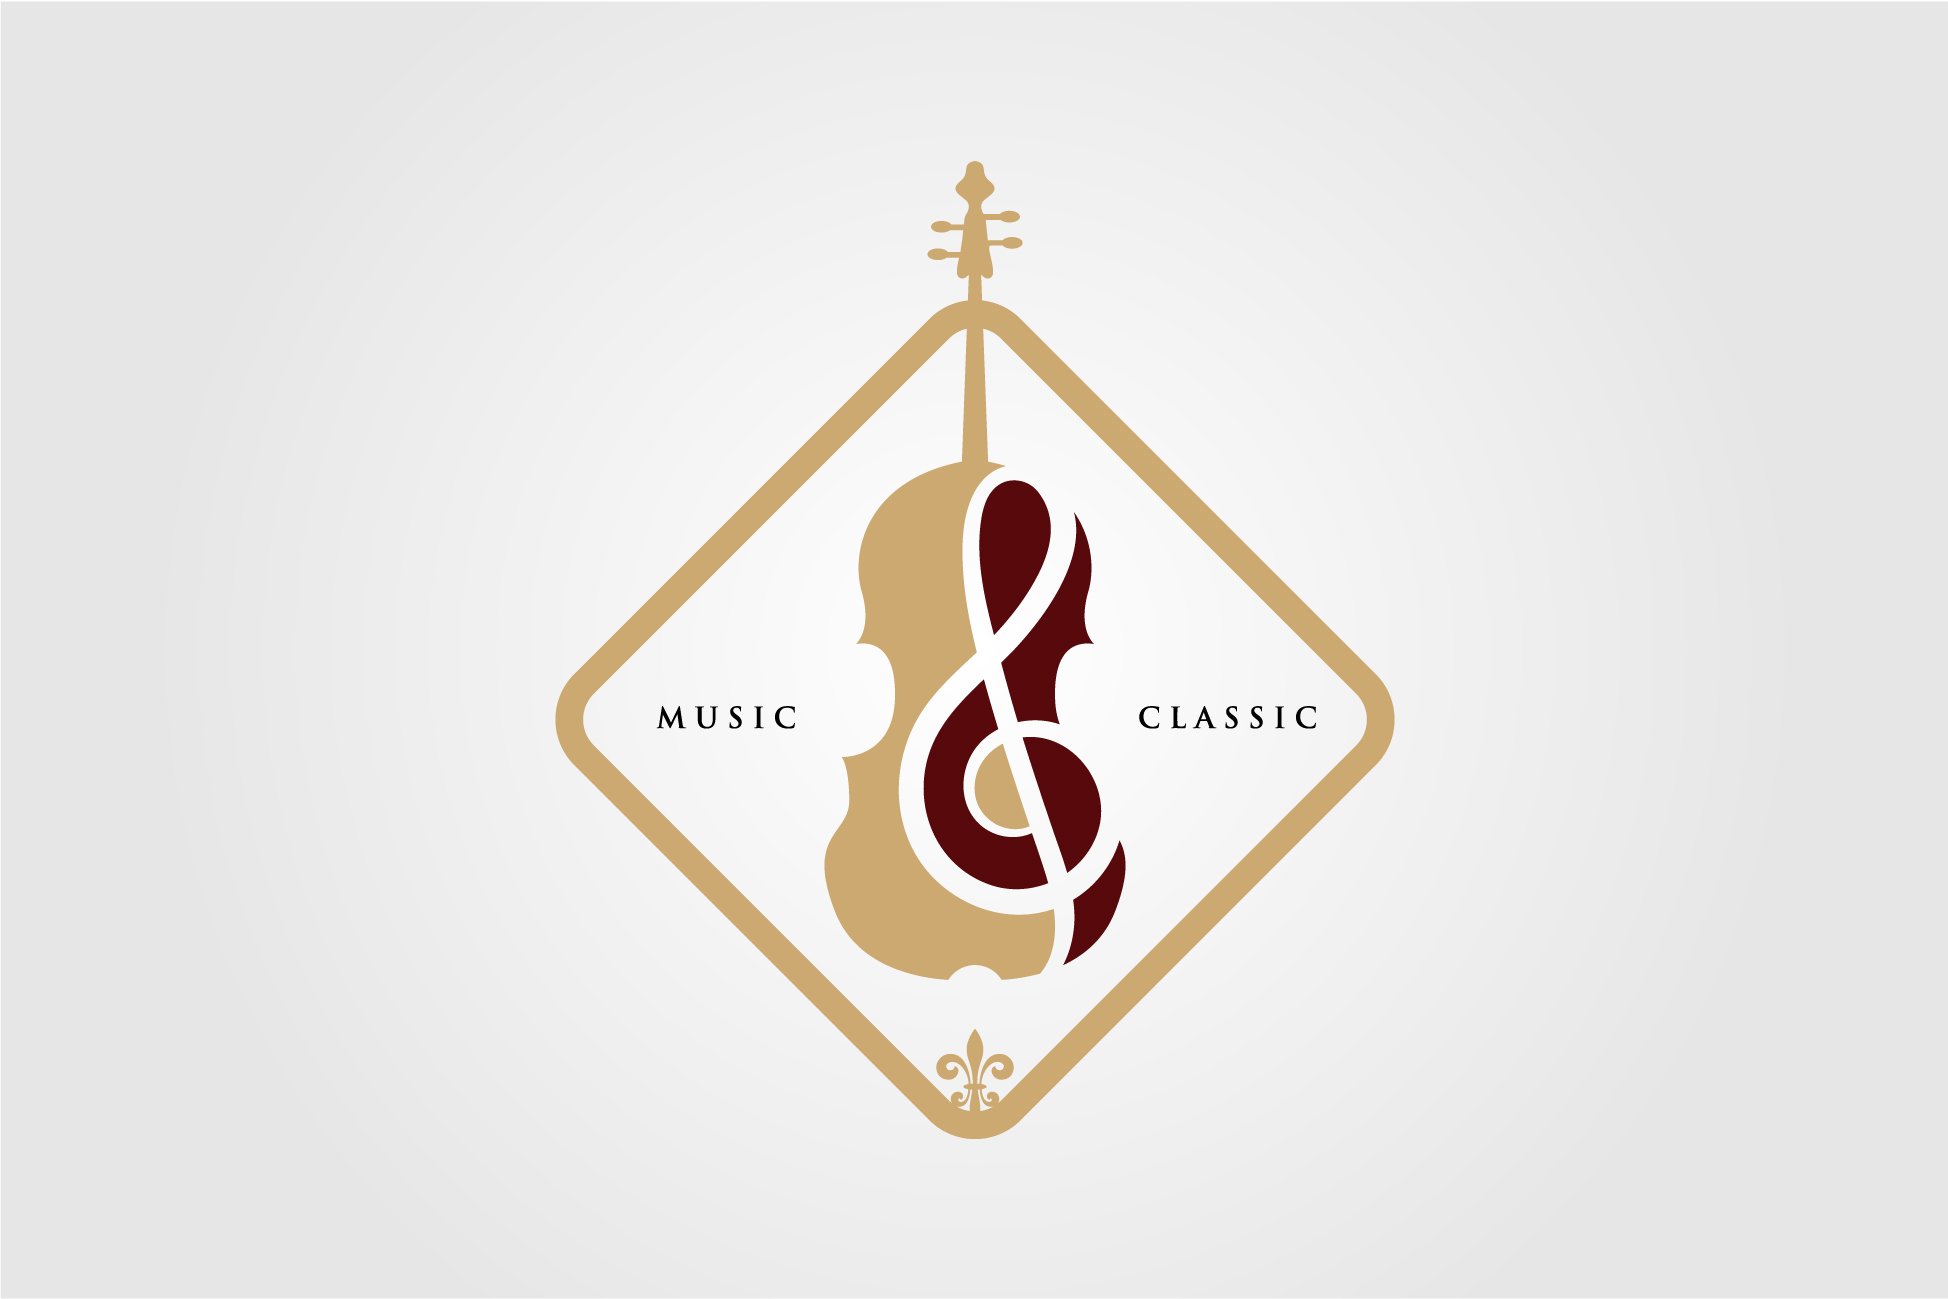 Violin / Cello logo design cover image.